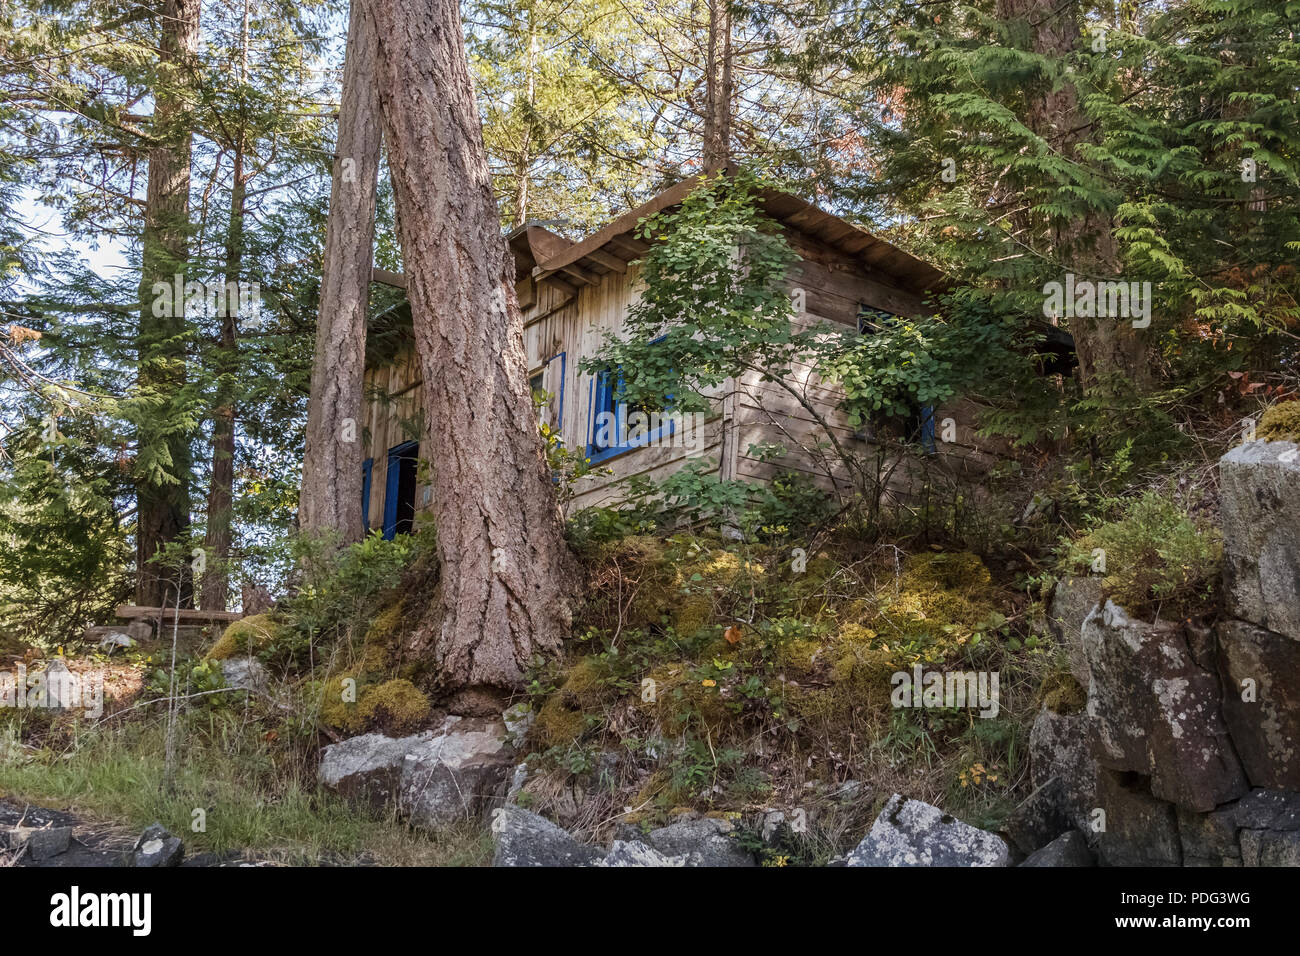 Une petite cabane en bois avec des cadres de fenêtre bleu est niché dans une forêt de sapin Douglas sur une colline rocheuse sur la côte de la Colombie-Britannique (vue de dessous). Banque D'Images